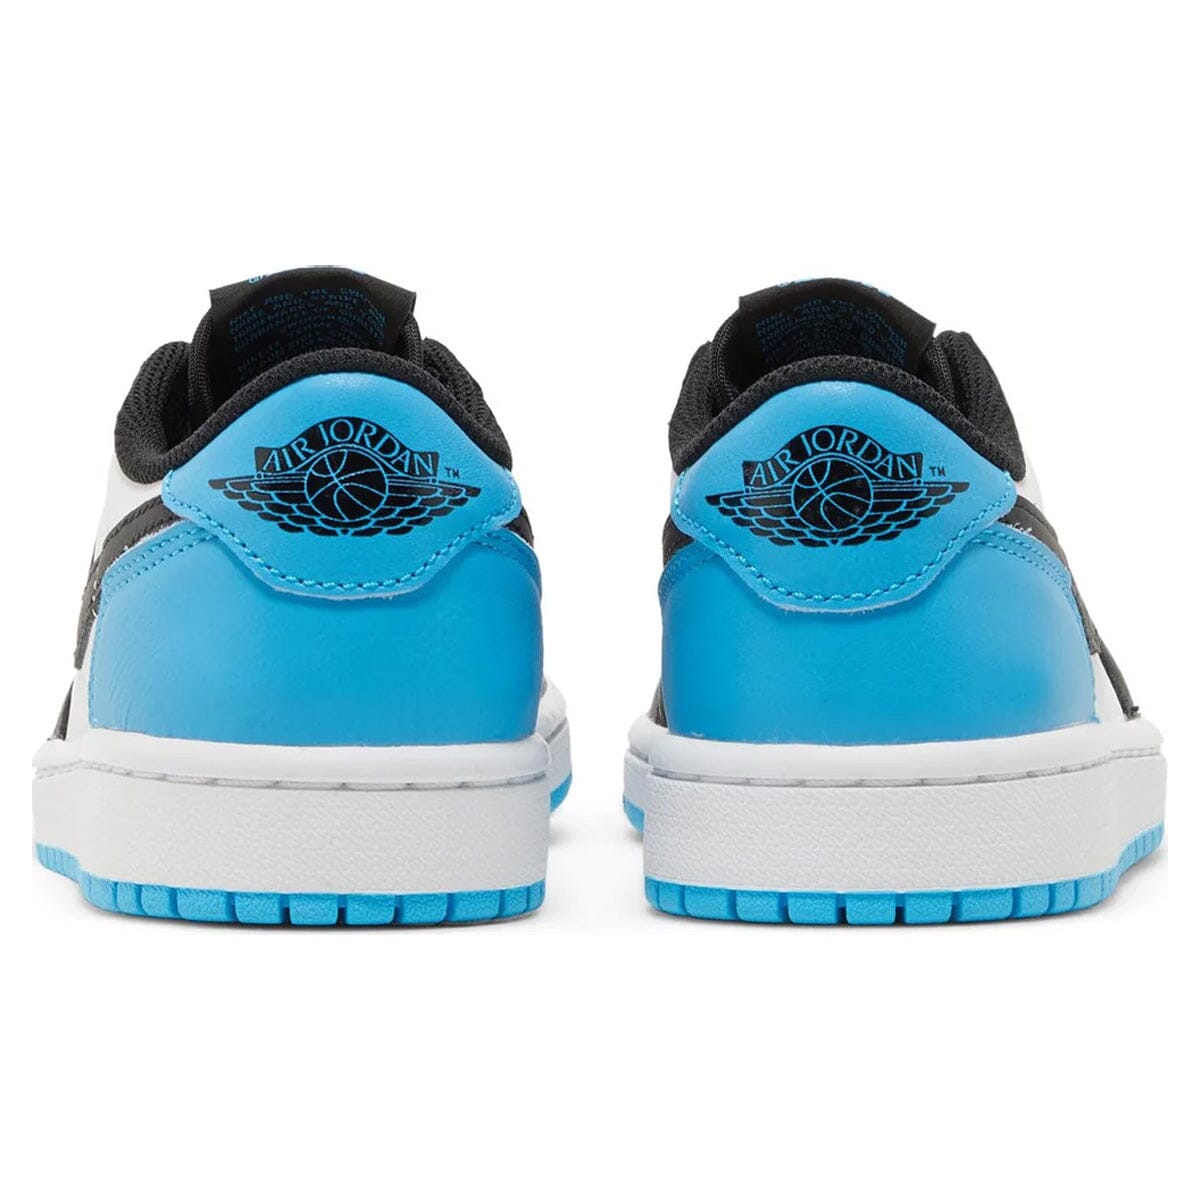 Air Jordan 1 Low UNC Black Dark Powder Blue Air Jordan 1 Low Blizz Sneakers 